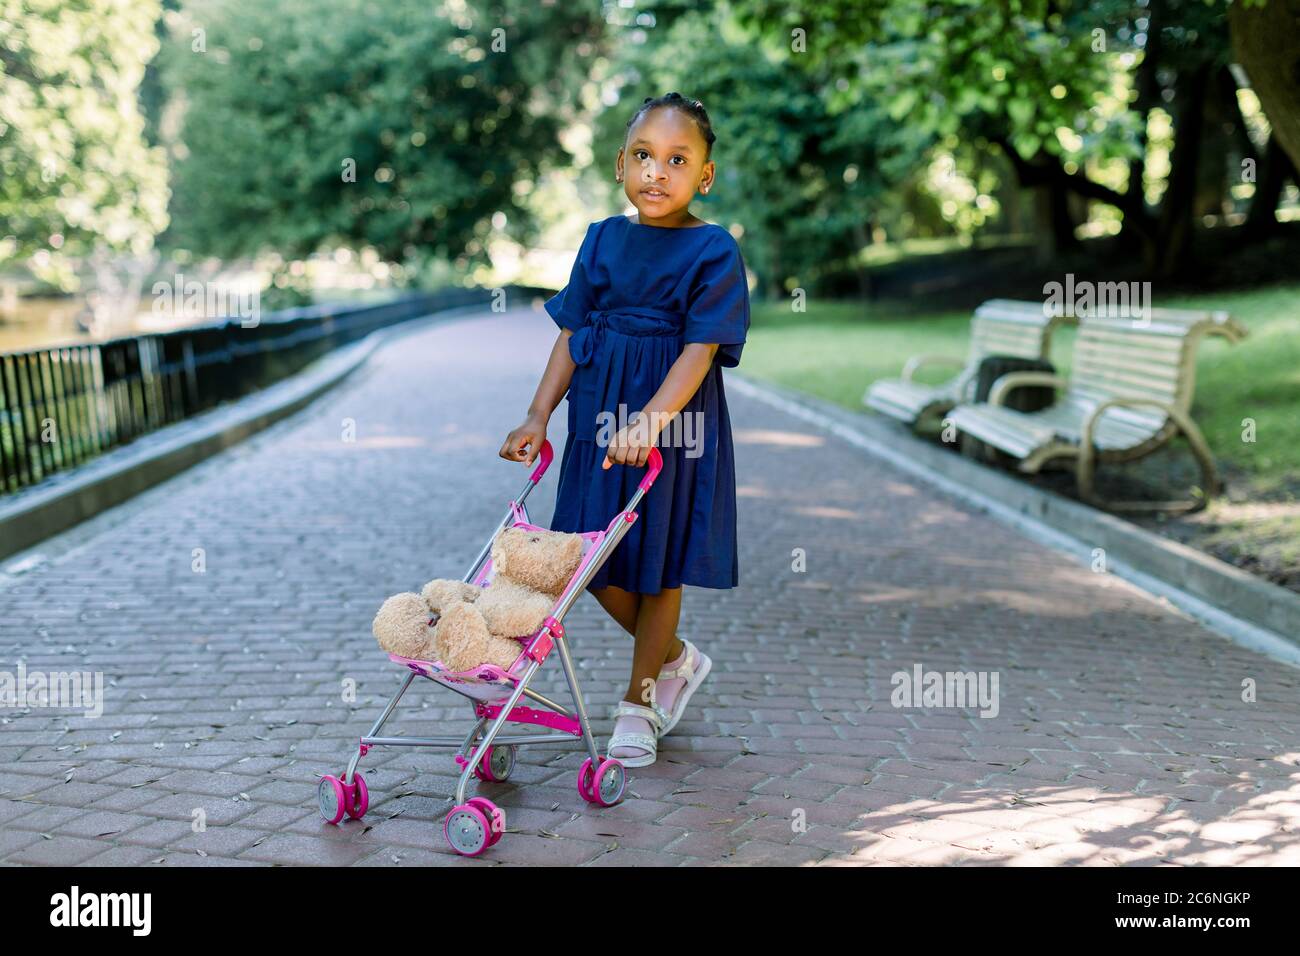 Kleine 5 Jahre alte afrikanische Kind Mädchen gehen und spielen mit ihrem  Spielzeug Kinderwagen im Park. Niedliches kleines dunkelhäutiges Mädchen mit  Kinderwagen und Teddybär Stockfotografie - Alamy